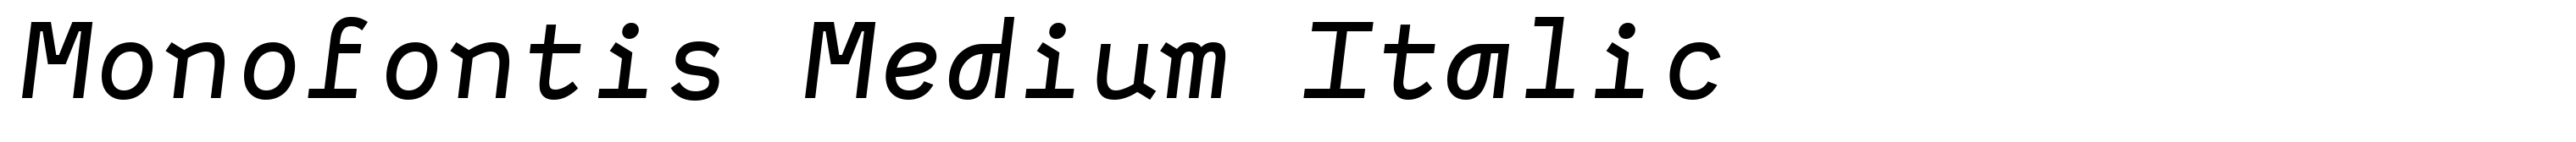 Monofontis Medium Italic